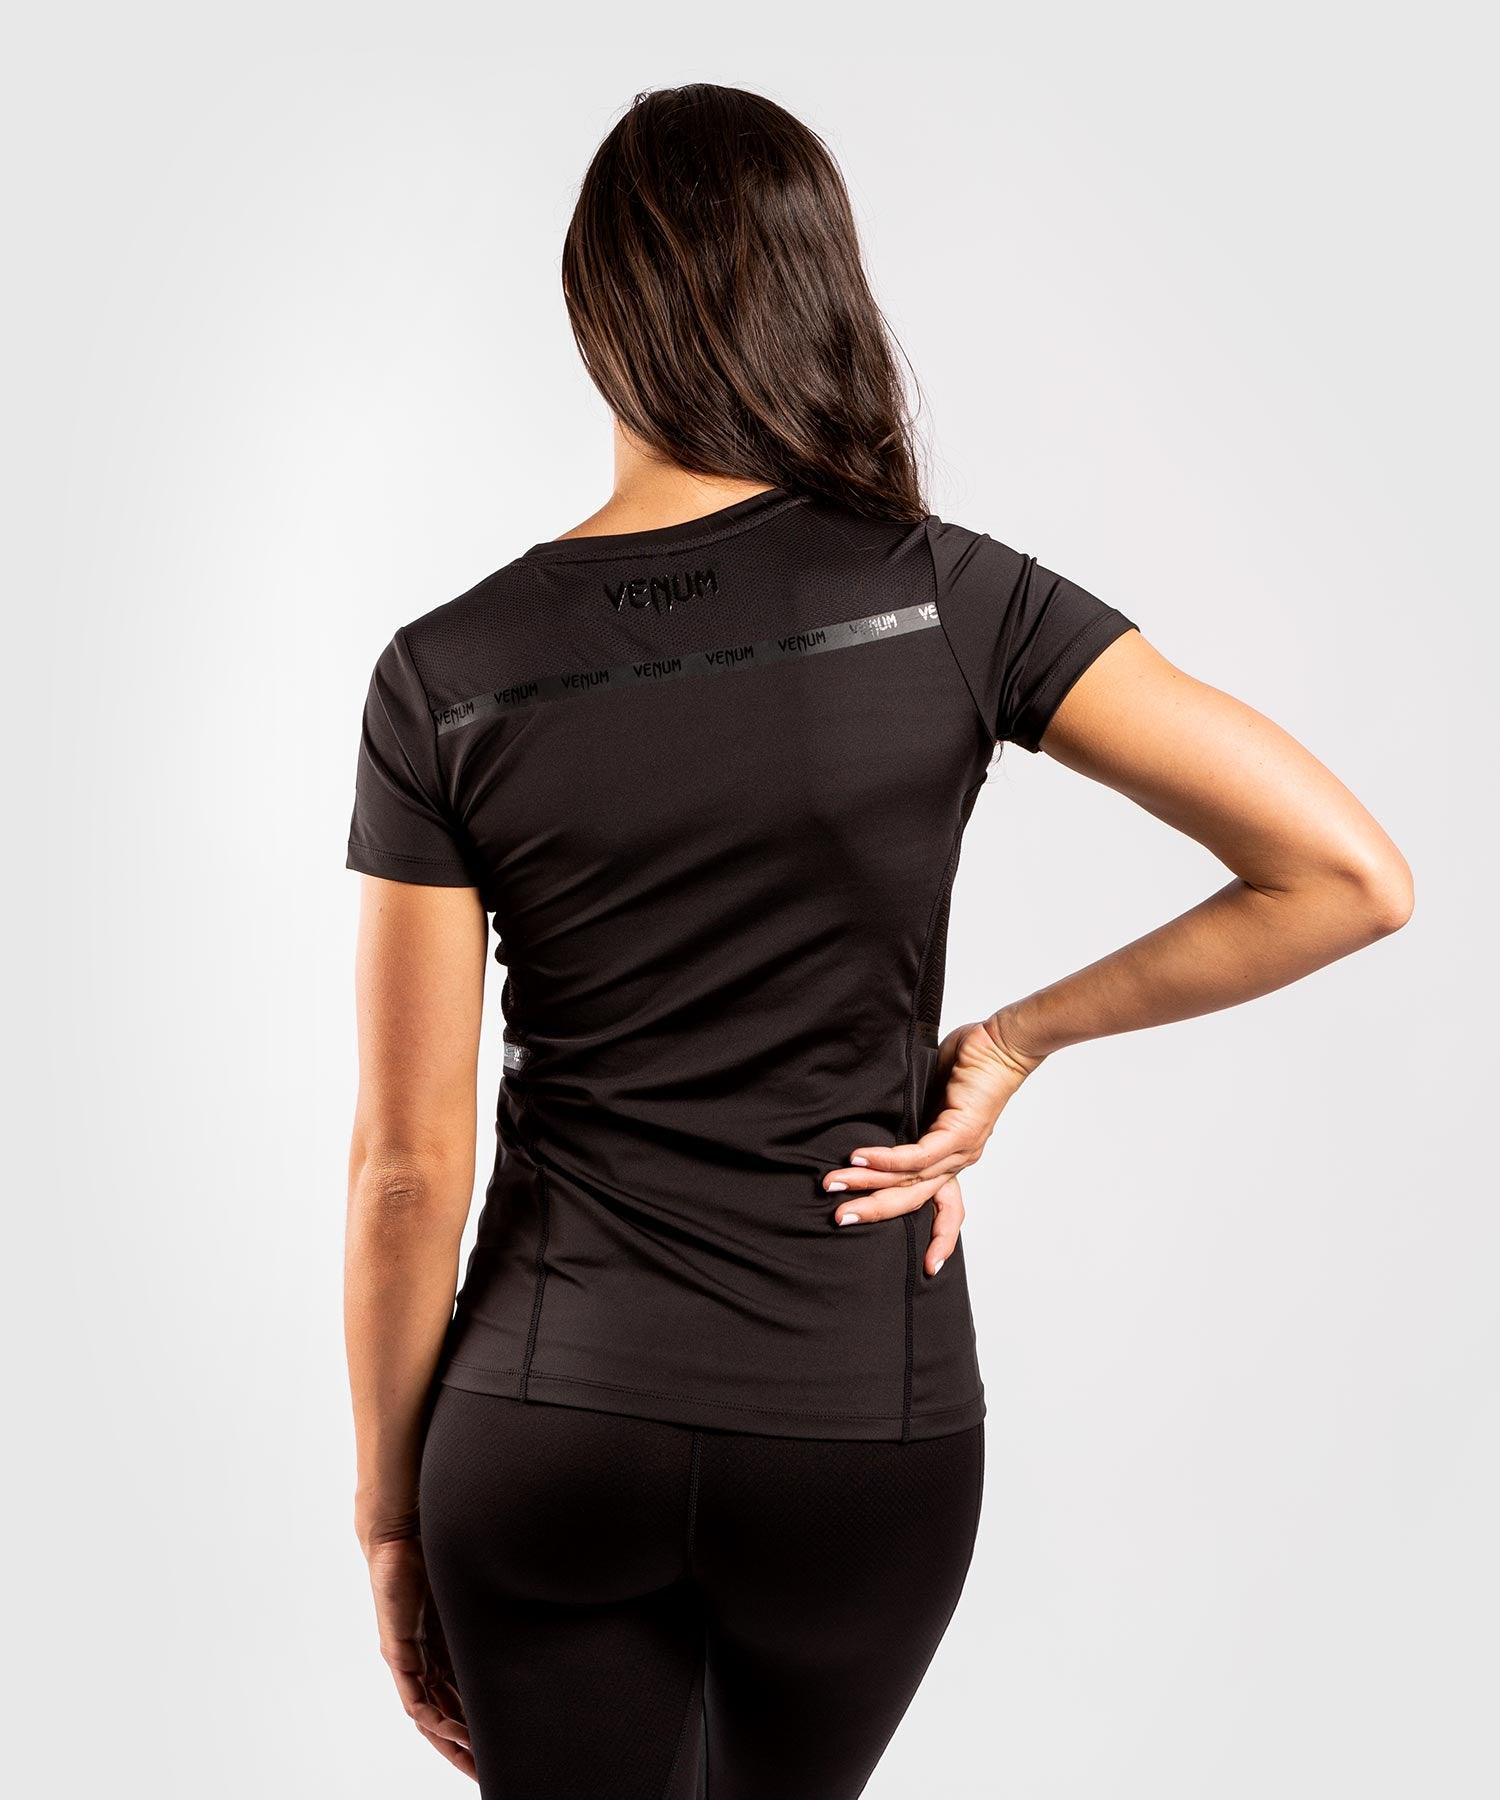 Venum G-Fit Dry-Tech T-shirt - For Women - Black/Black Picture 4